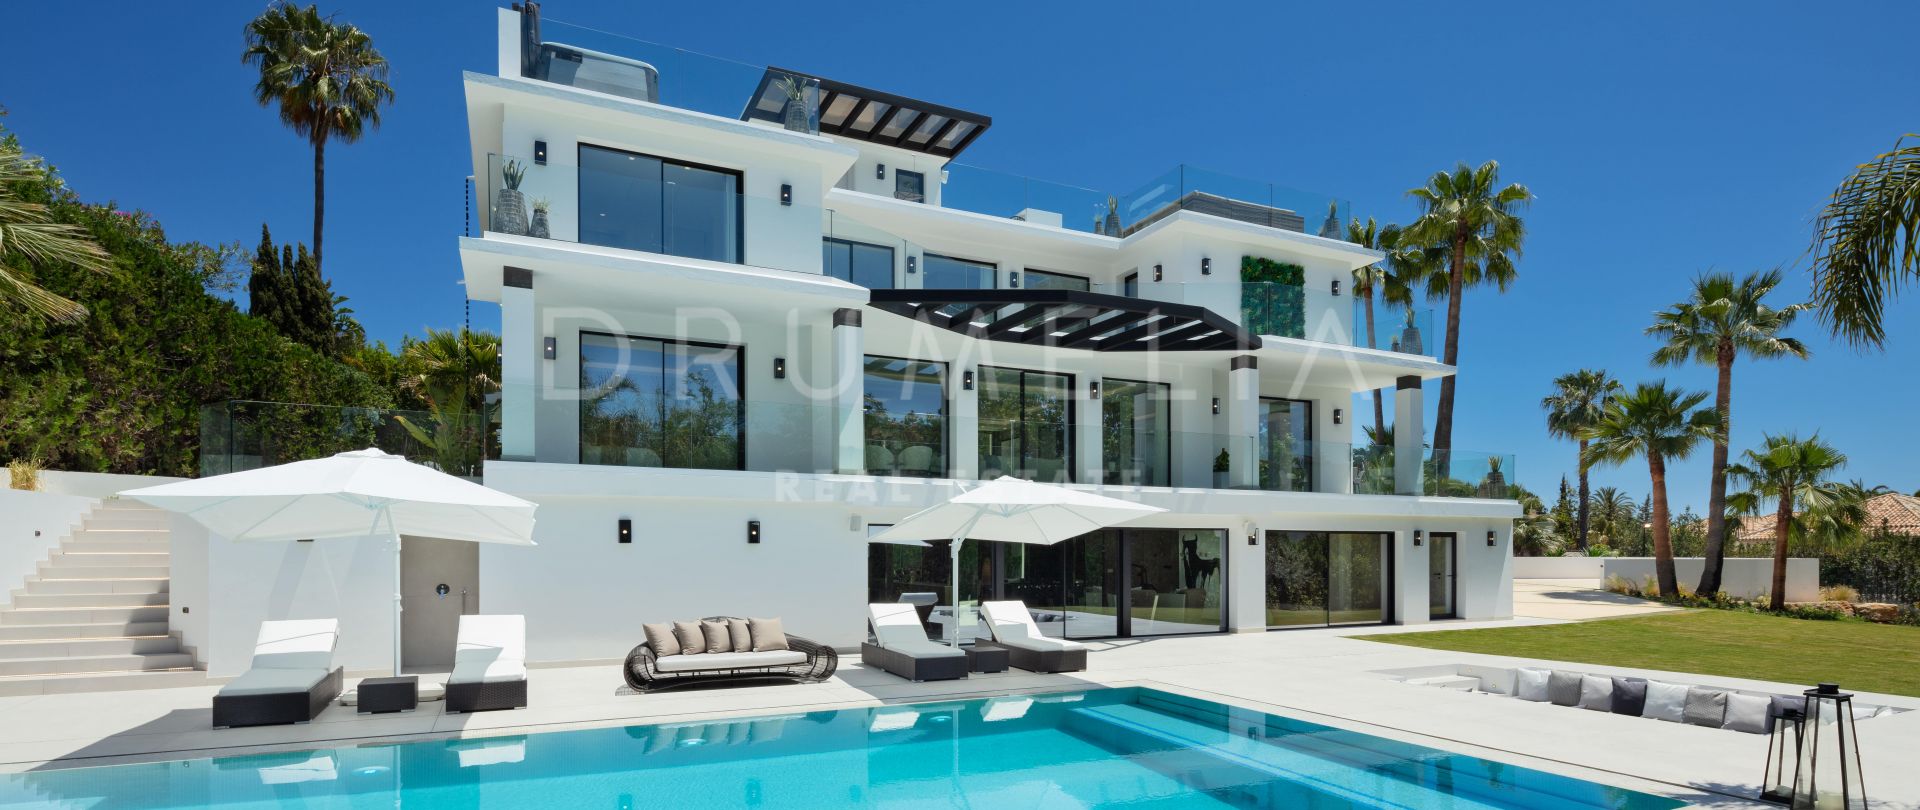 Villa Palms - Impresionante y moderna casa de lujo en Nagüeles, Milla de Oro de Marbella